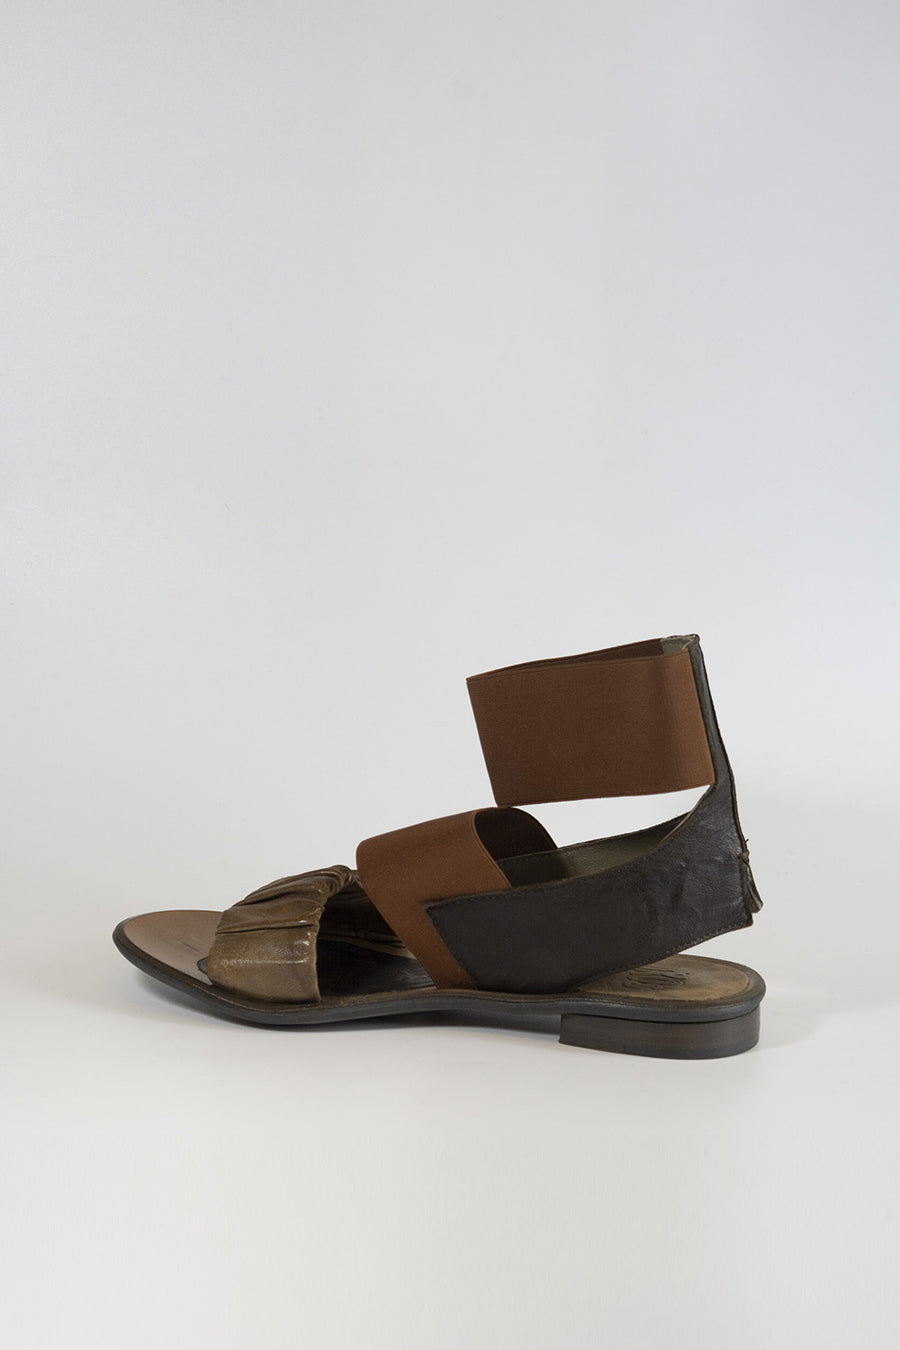 Sandalo Ixos da donna in pelle color marrone e taupe X11E55010